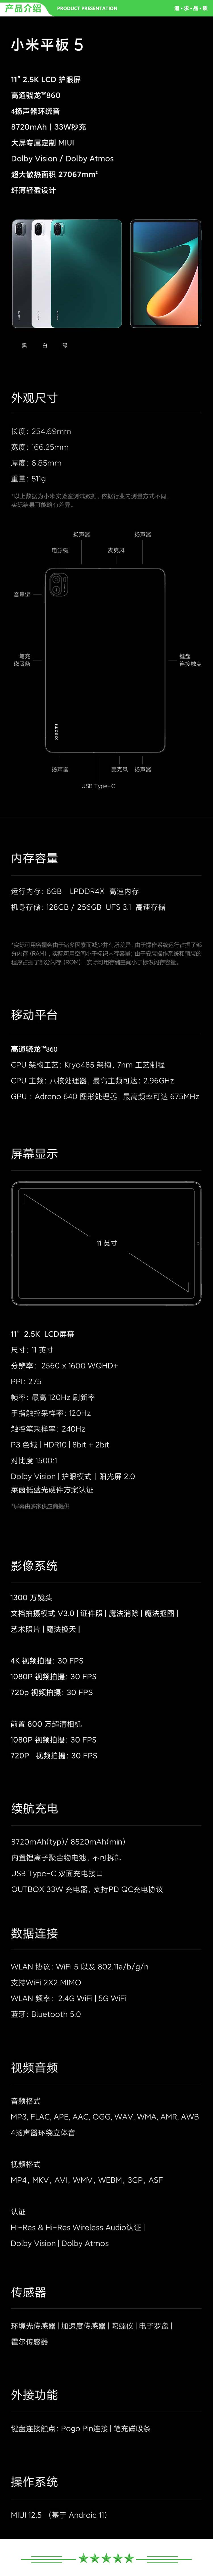 小米 xiaomi 平板5 平板电脑（11英寸2.5K高清 120Hz 骁龙860 6G+128GB 33W快充 杜比影音娱乐办公 黑色）.jpg